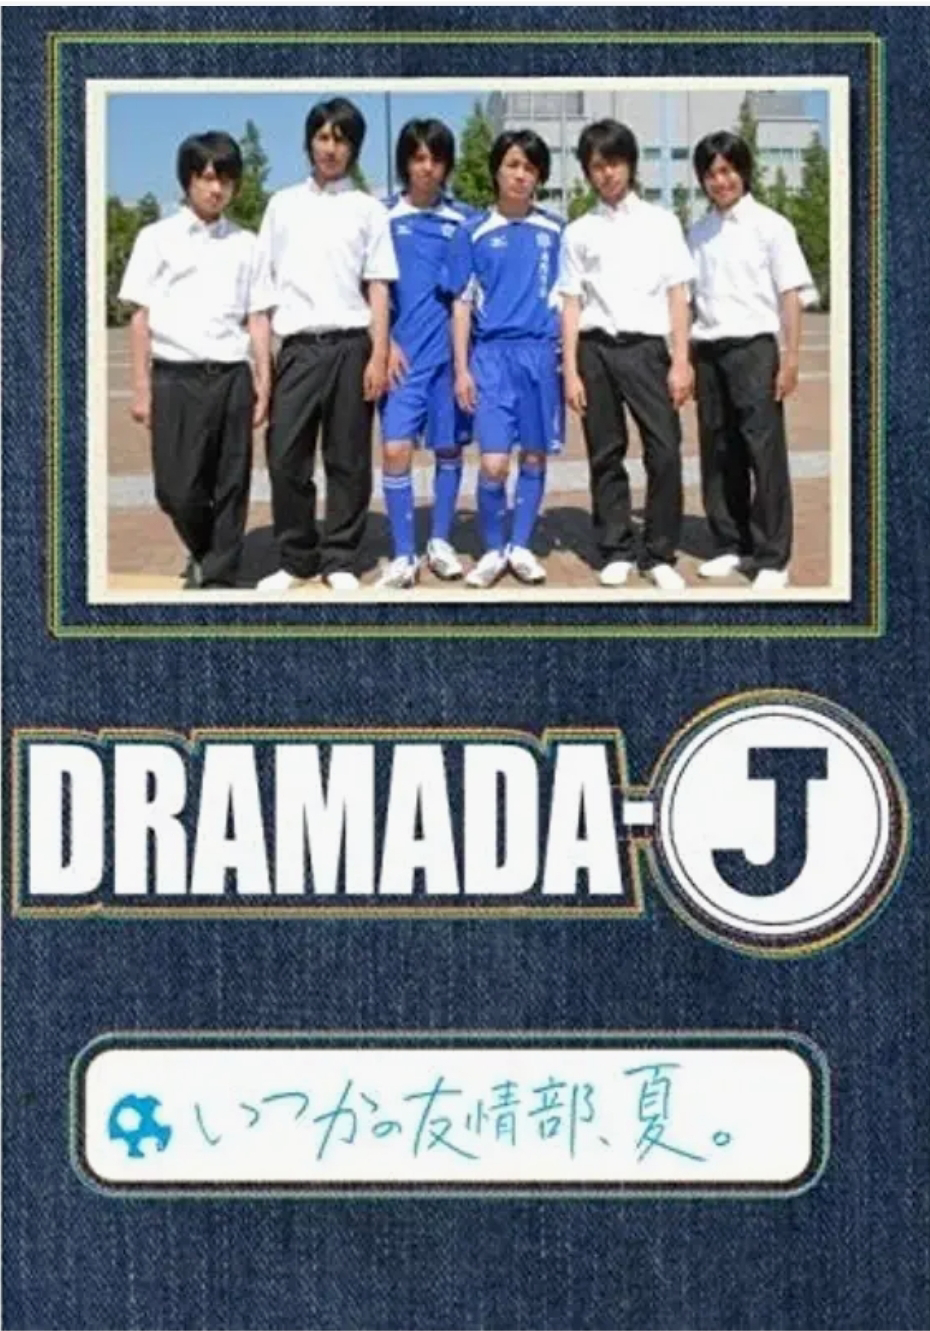 DRAMADA-J「いつかの友情部、夏。」